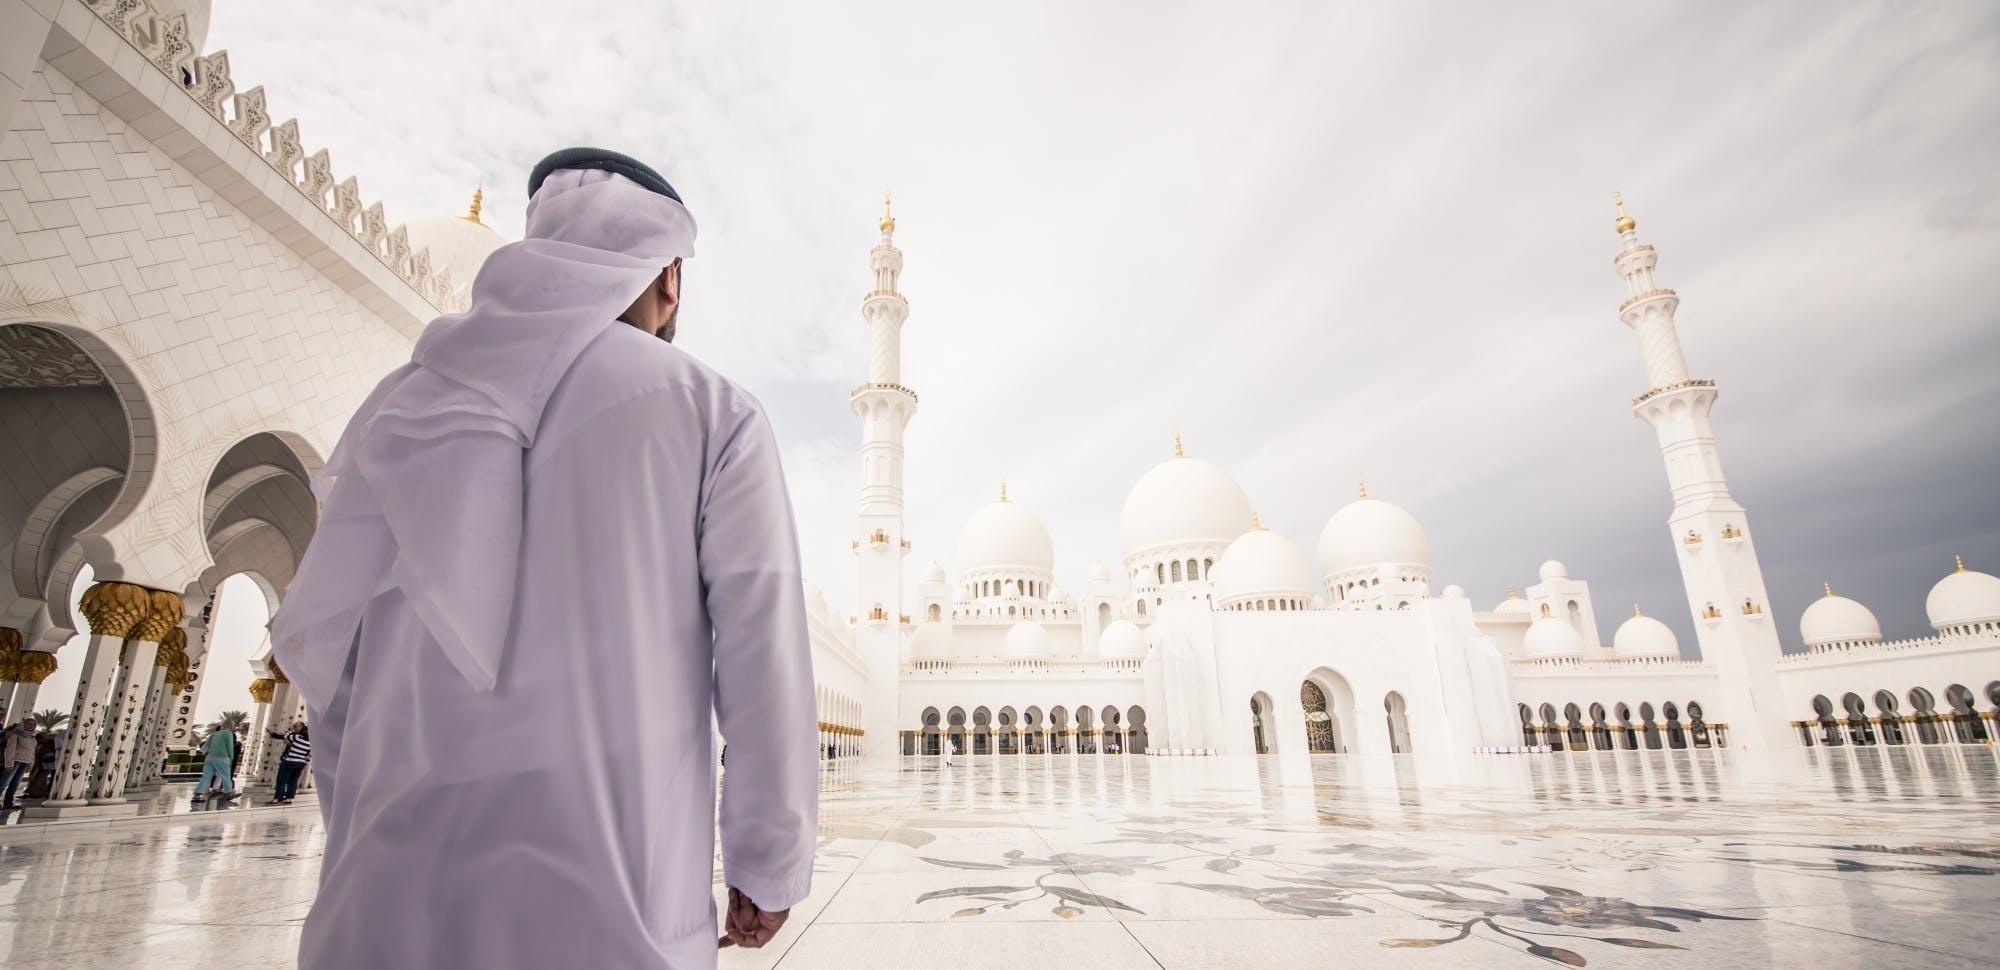 Halbtägige Führung durch die Scheich-Zayid-Moschee mit Abholung von Dubai